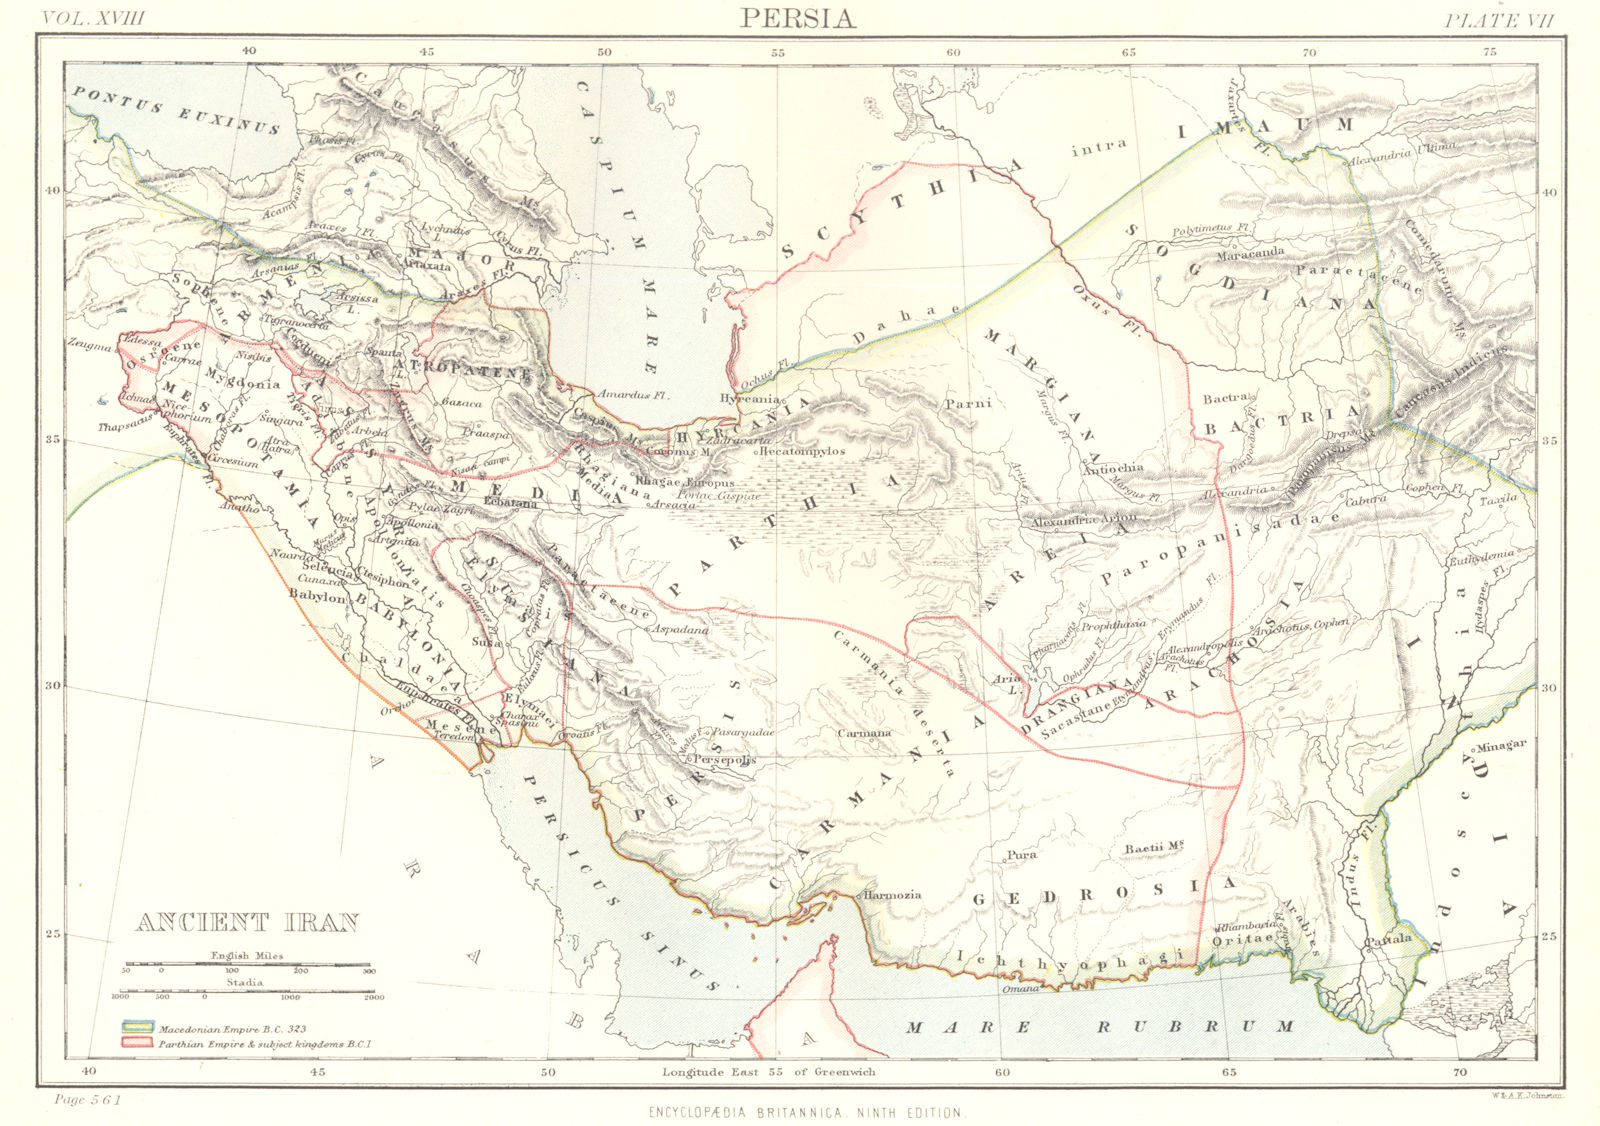 ANCIENT PERSIA. Persia Iran; Ancient Iran. Iraq. Britannica 9th edition 1898 map